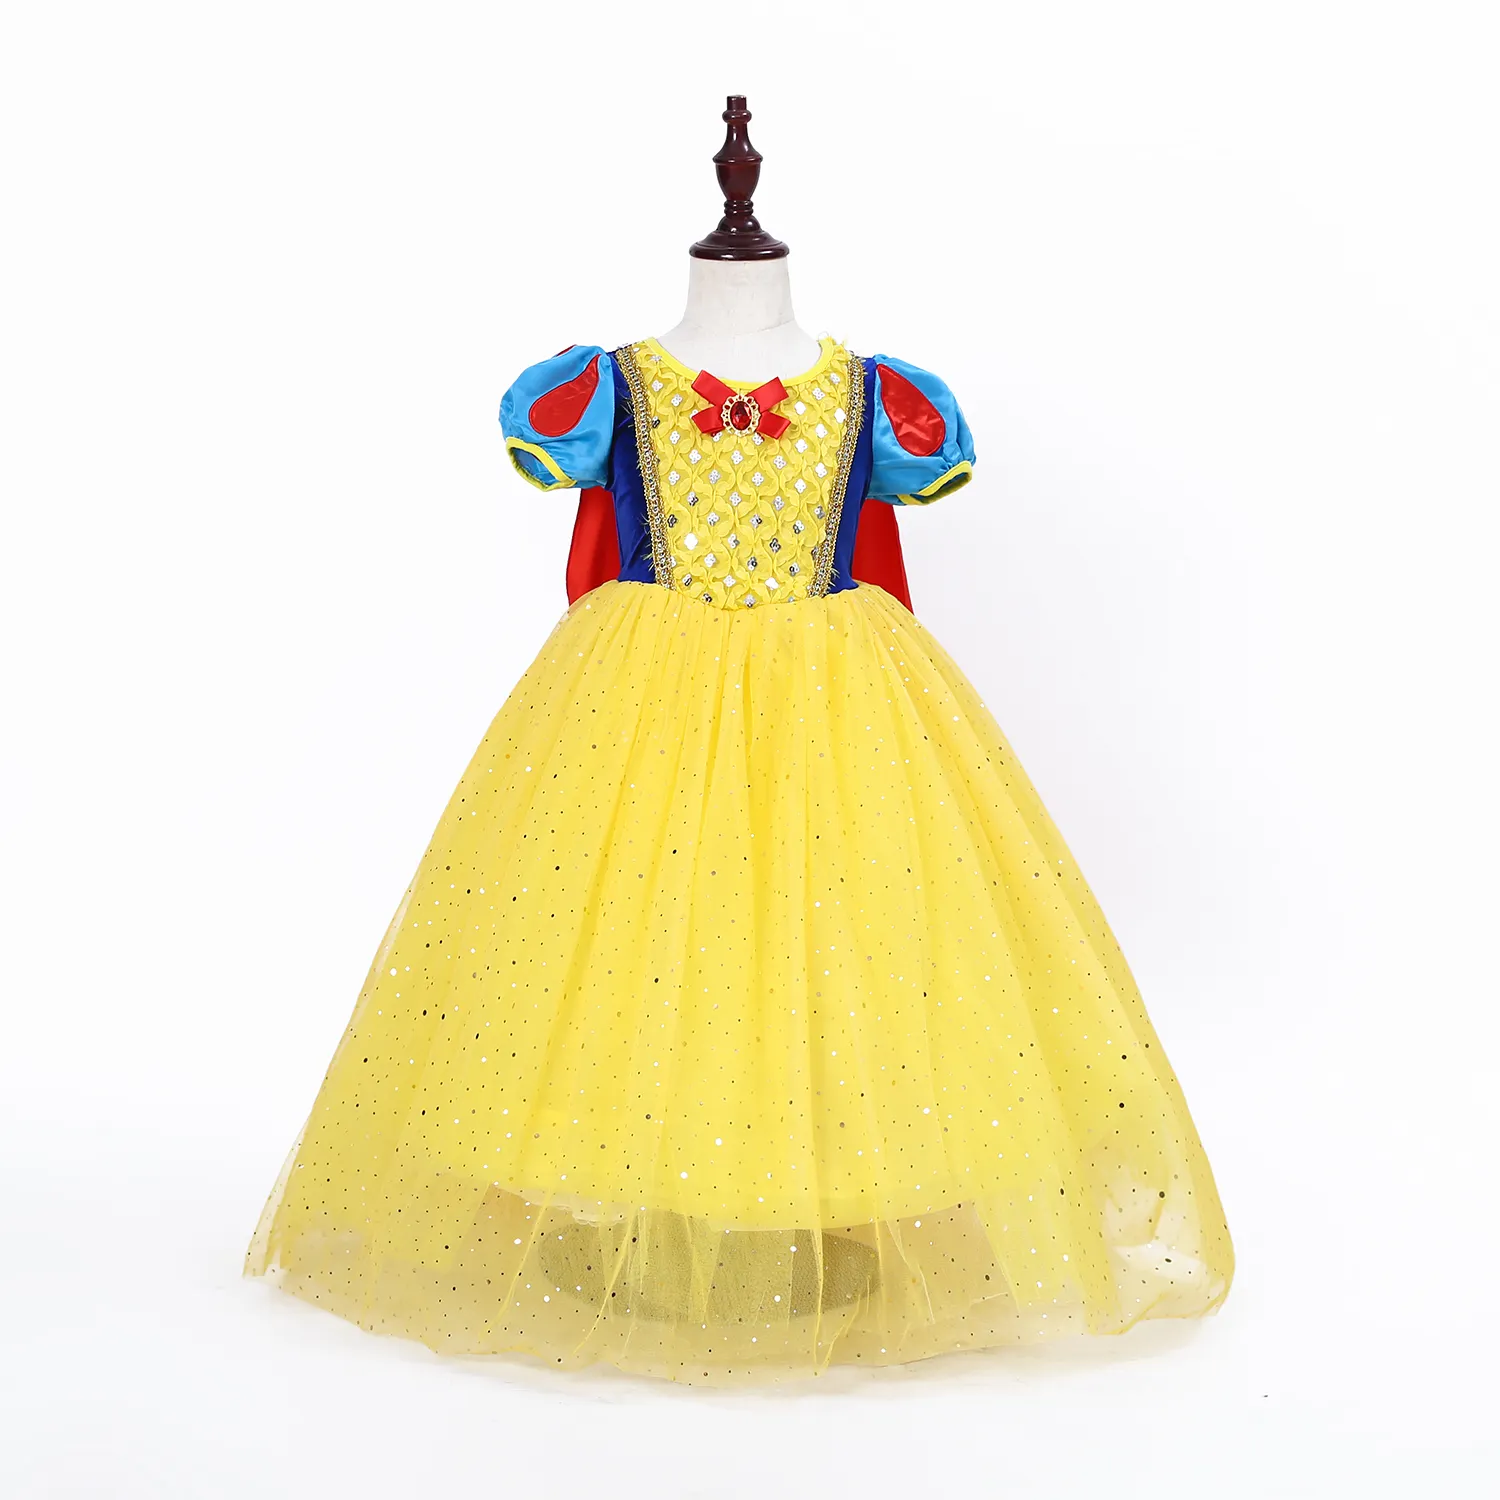 Prinzessin Schnee wittchen Kleid für Mädchen Party Baby Geburtstag Halloween Kostüme Kinder Cosplay Kleidungs stücke mit Umhang und Stirnband E70